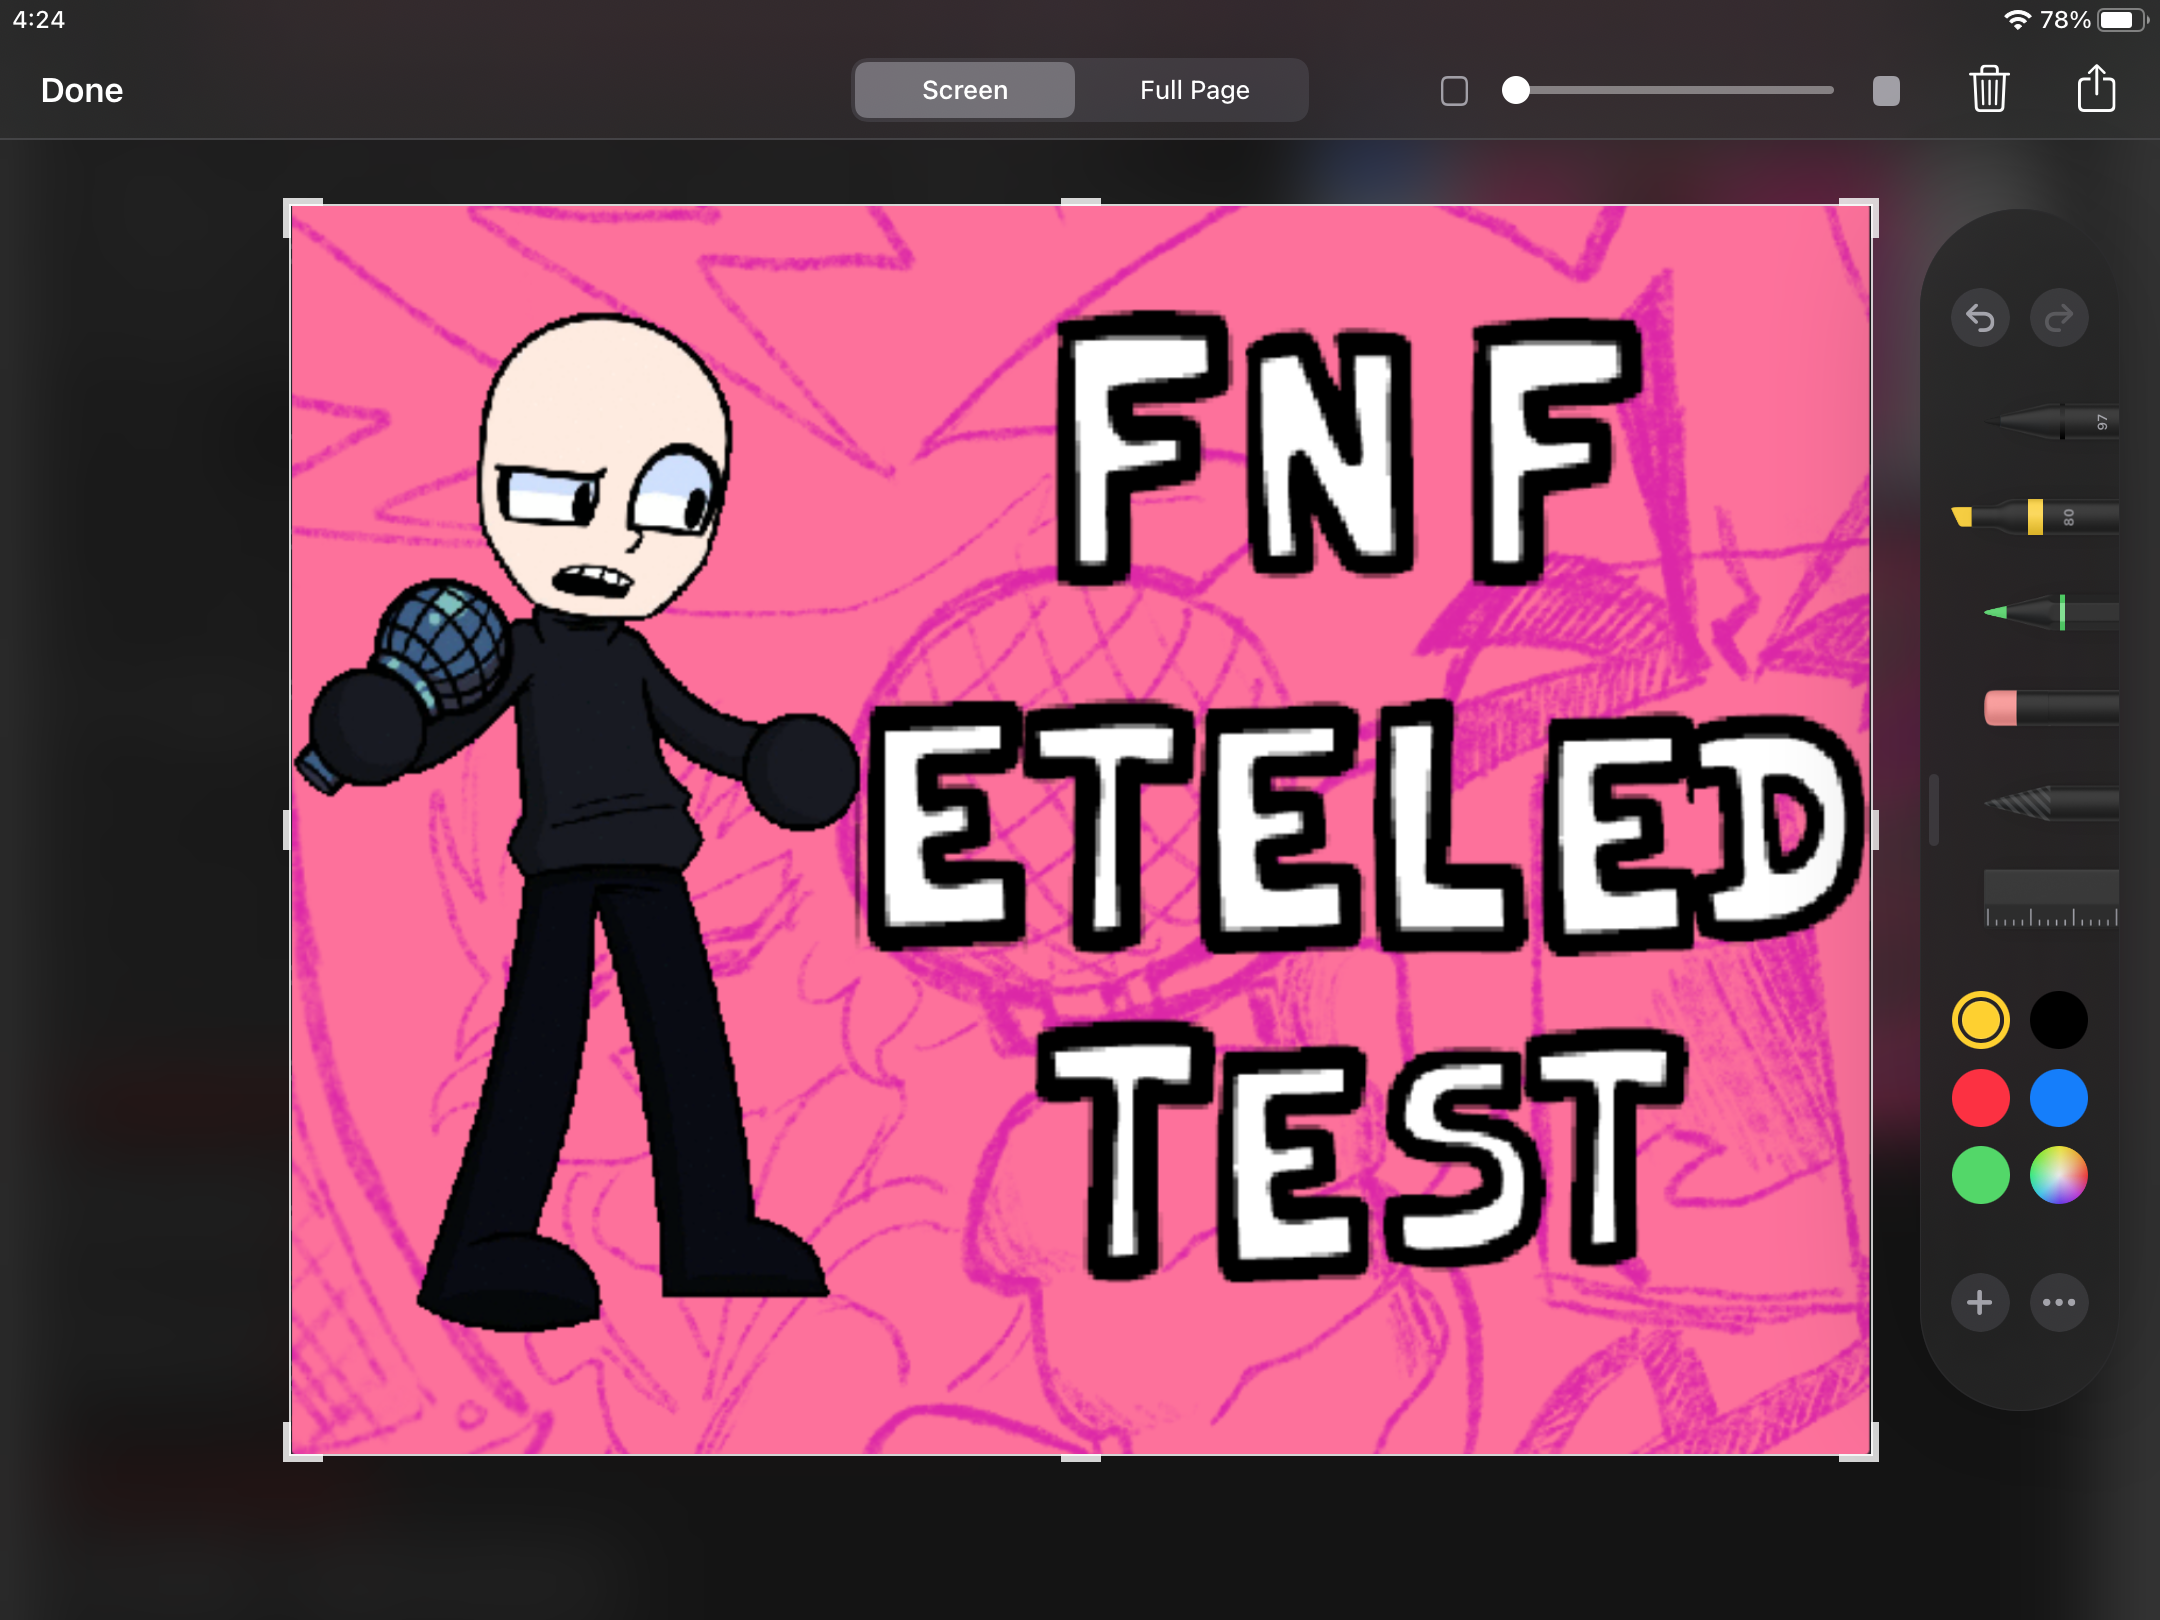 FNF Eteled Test (Bot Studio): прохождения, обзоры и рецензии, дата выхода,  системные требования